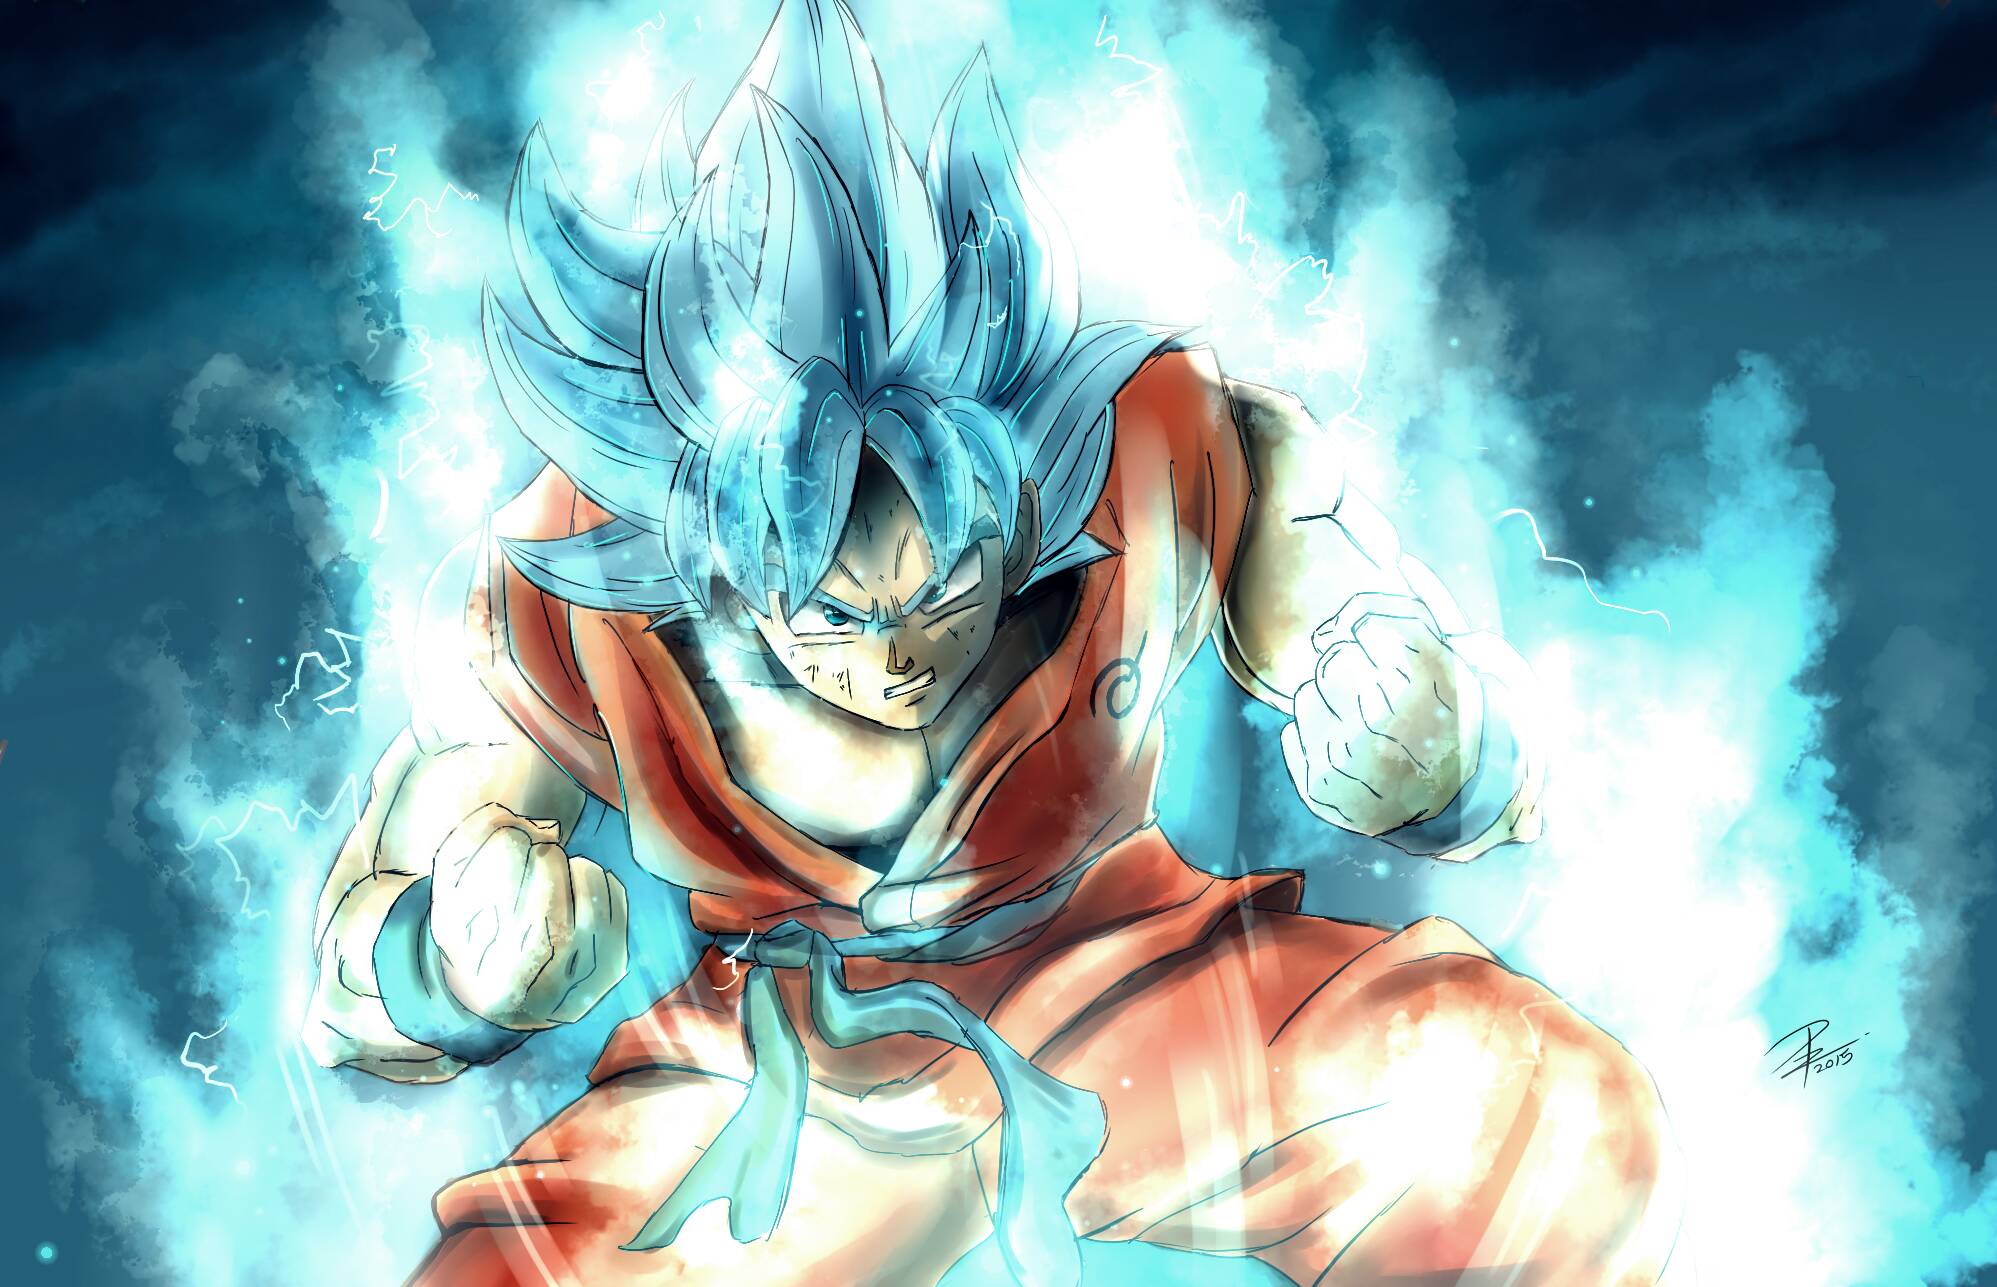 1093 Fondos de pantalla de Goku HD | Imágenes de fondo